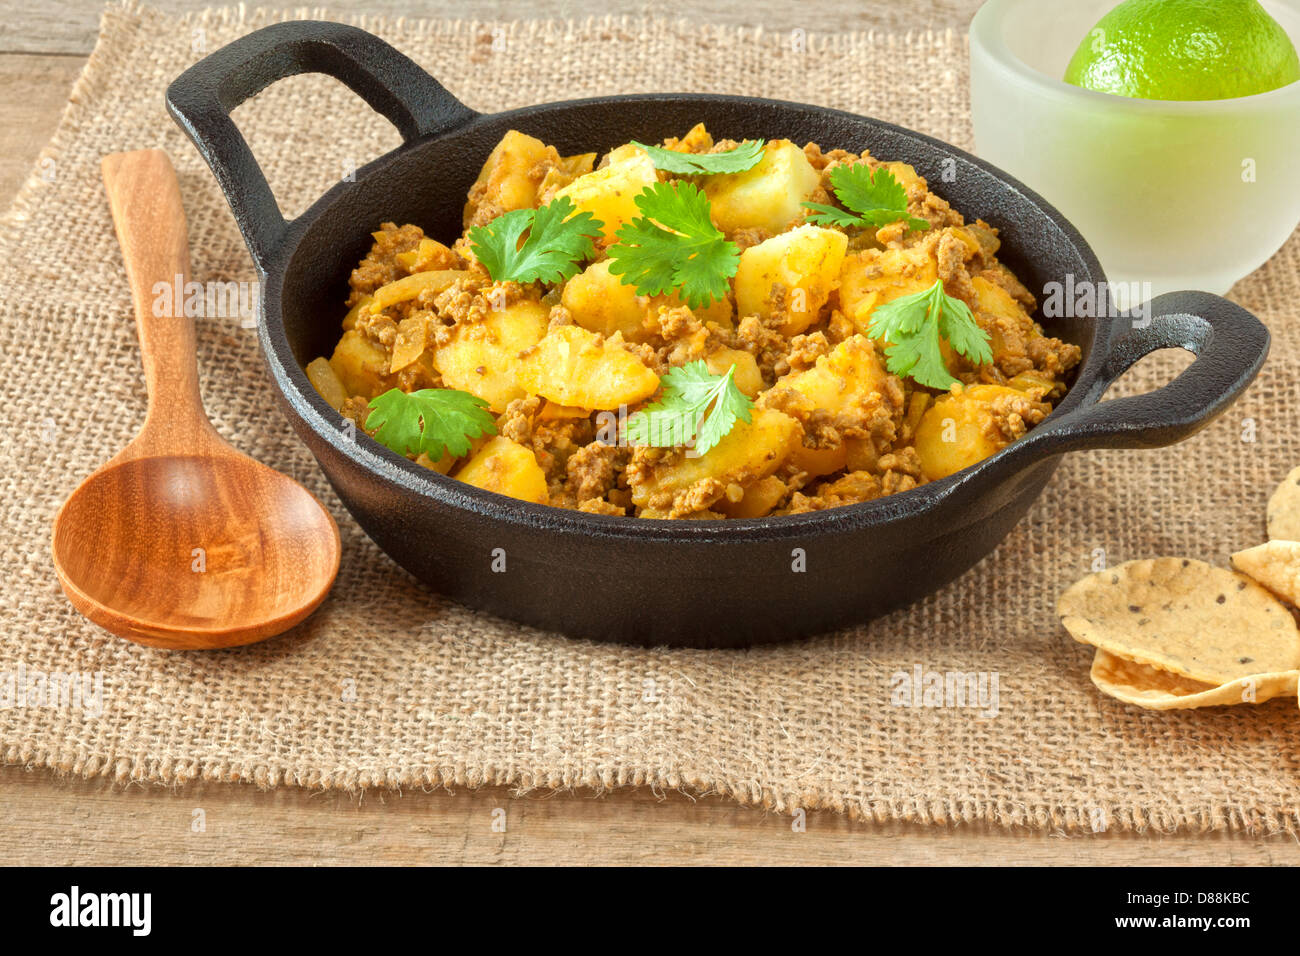 Le carni bovine e il Curry di patate - un sano menù ipocalorici di magro tritato o carne di manzo macinata in un curry con patate e coriandolo... Foto Stock